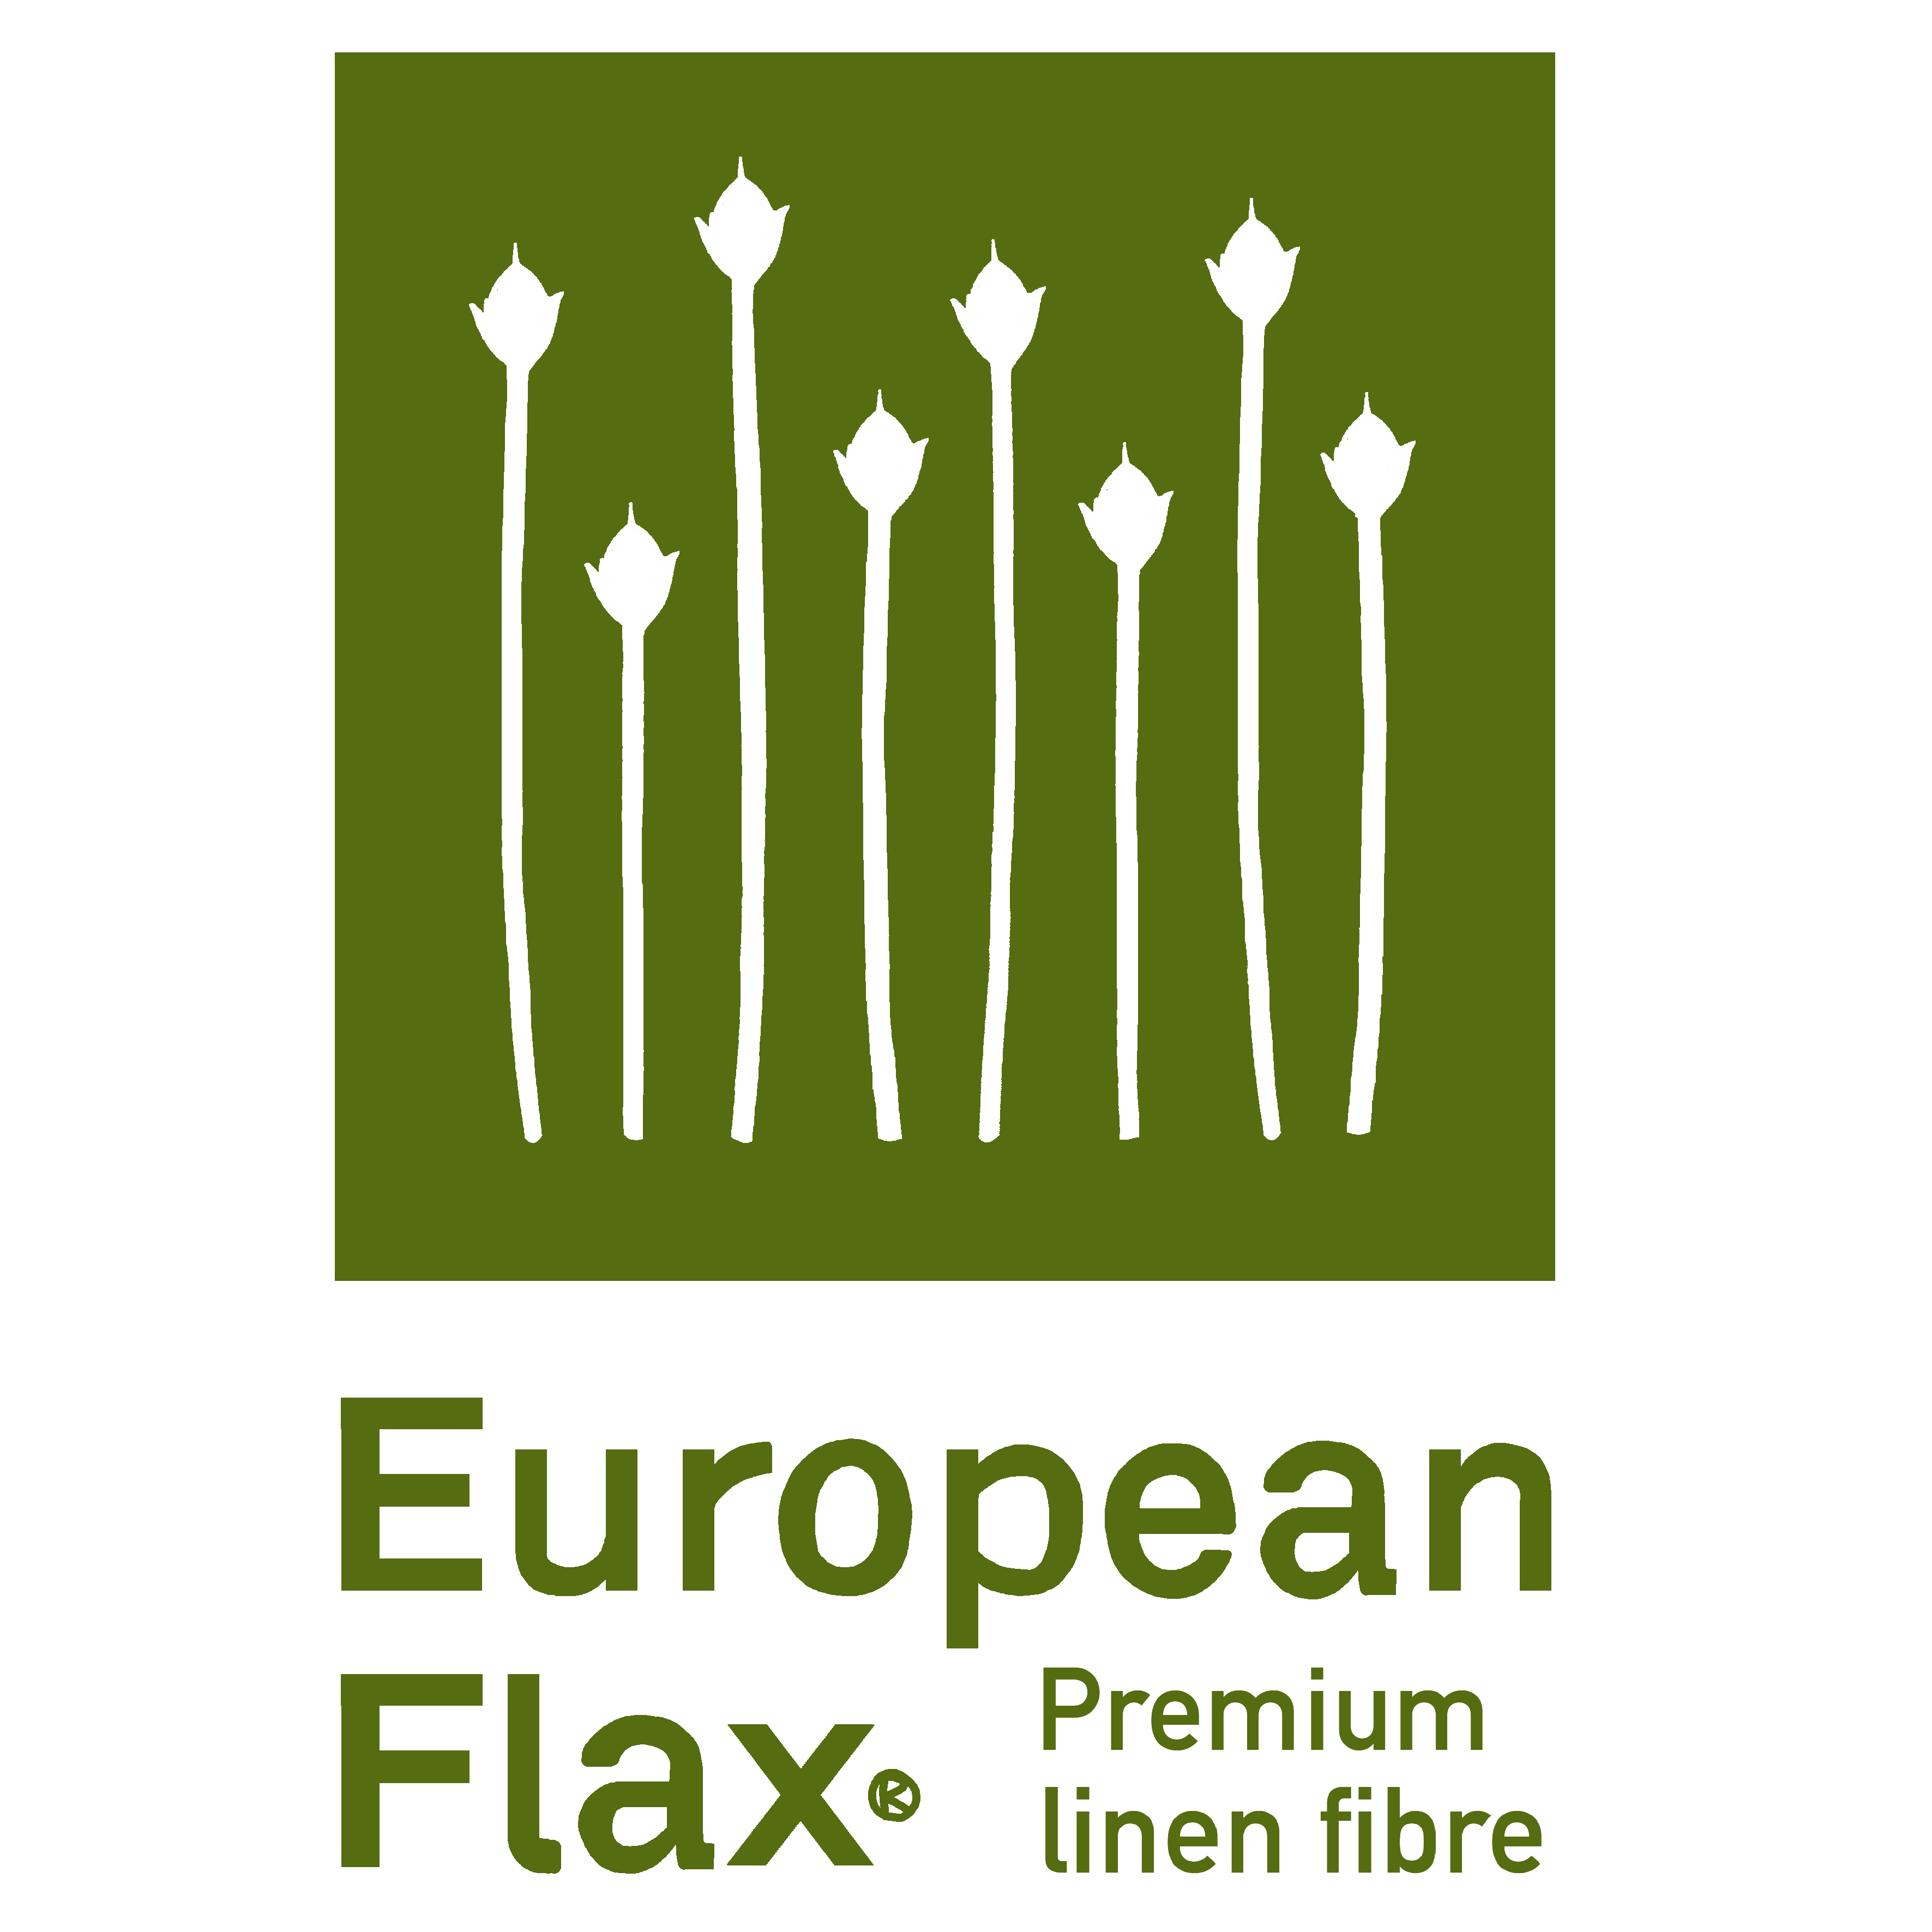 EUROPEAN FLAX